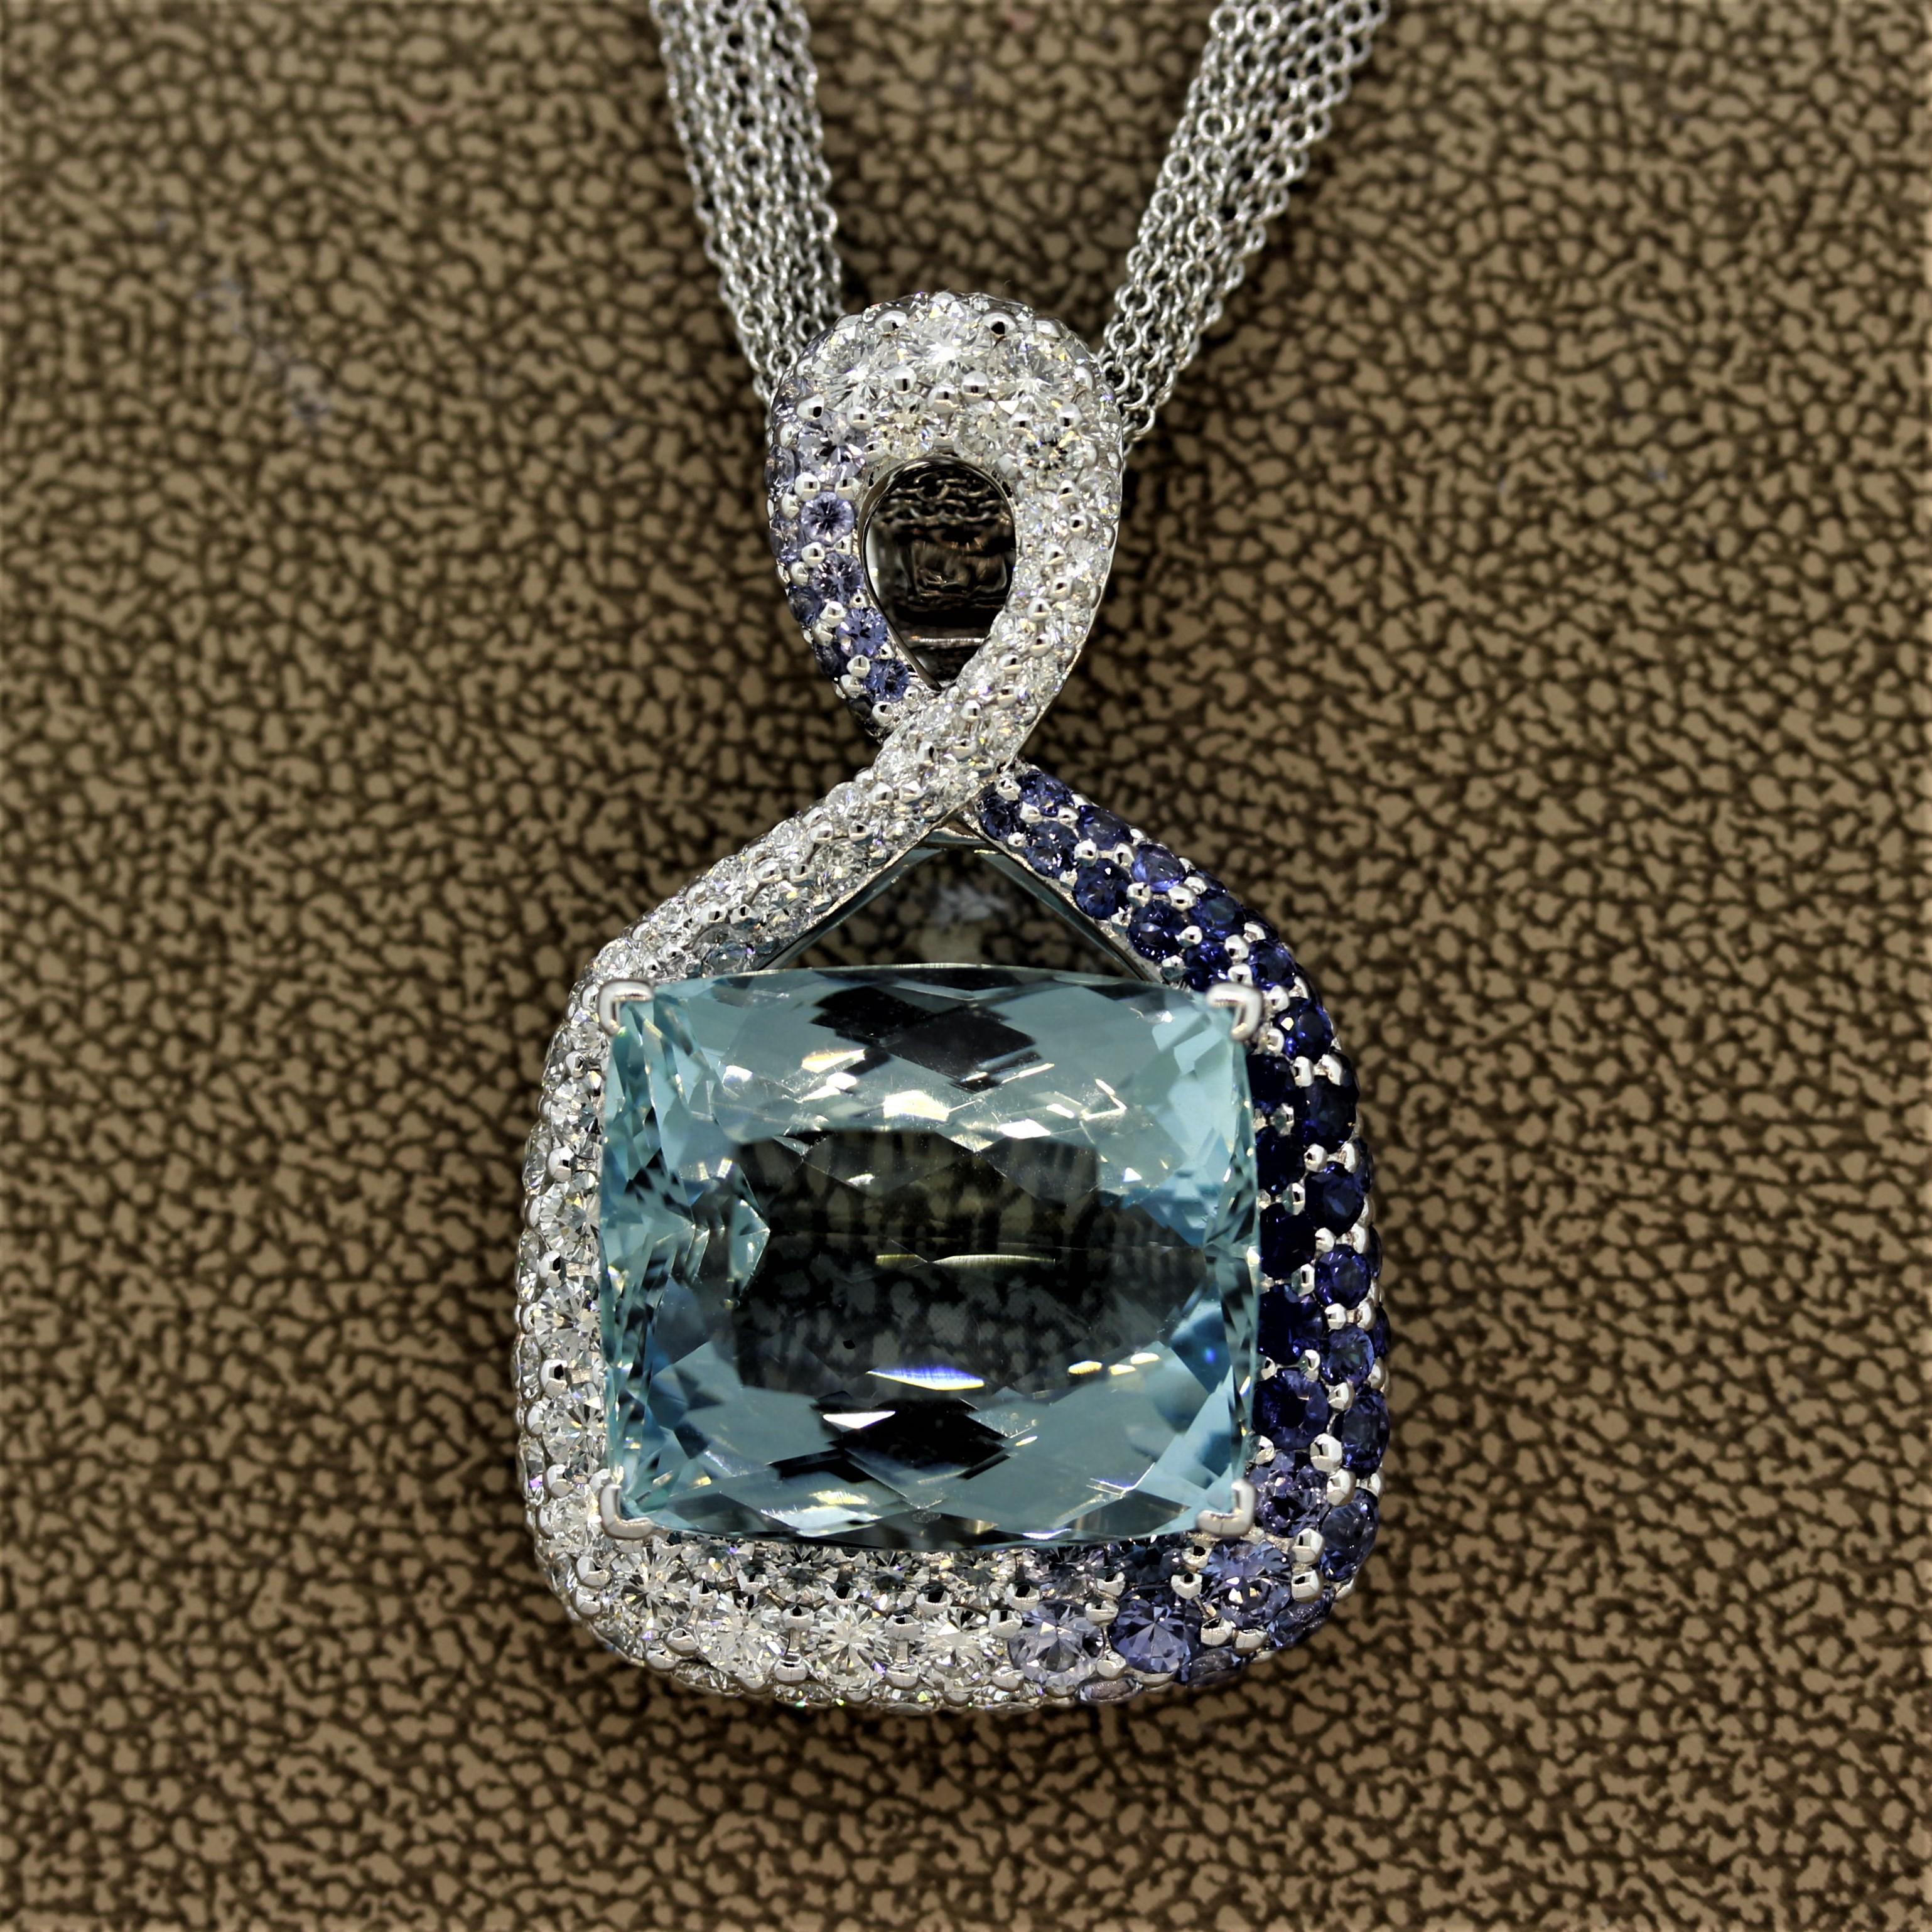 fine aquamarine necklaces